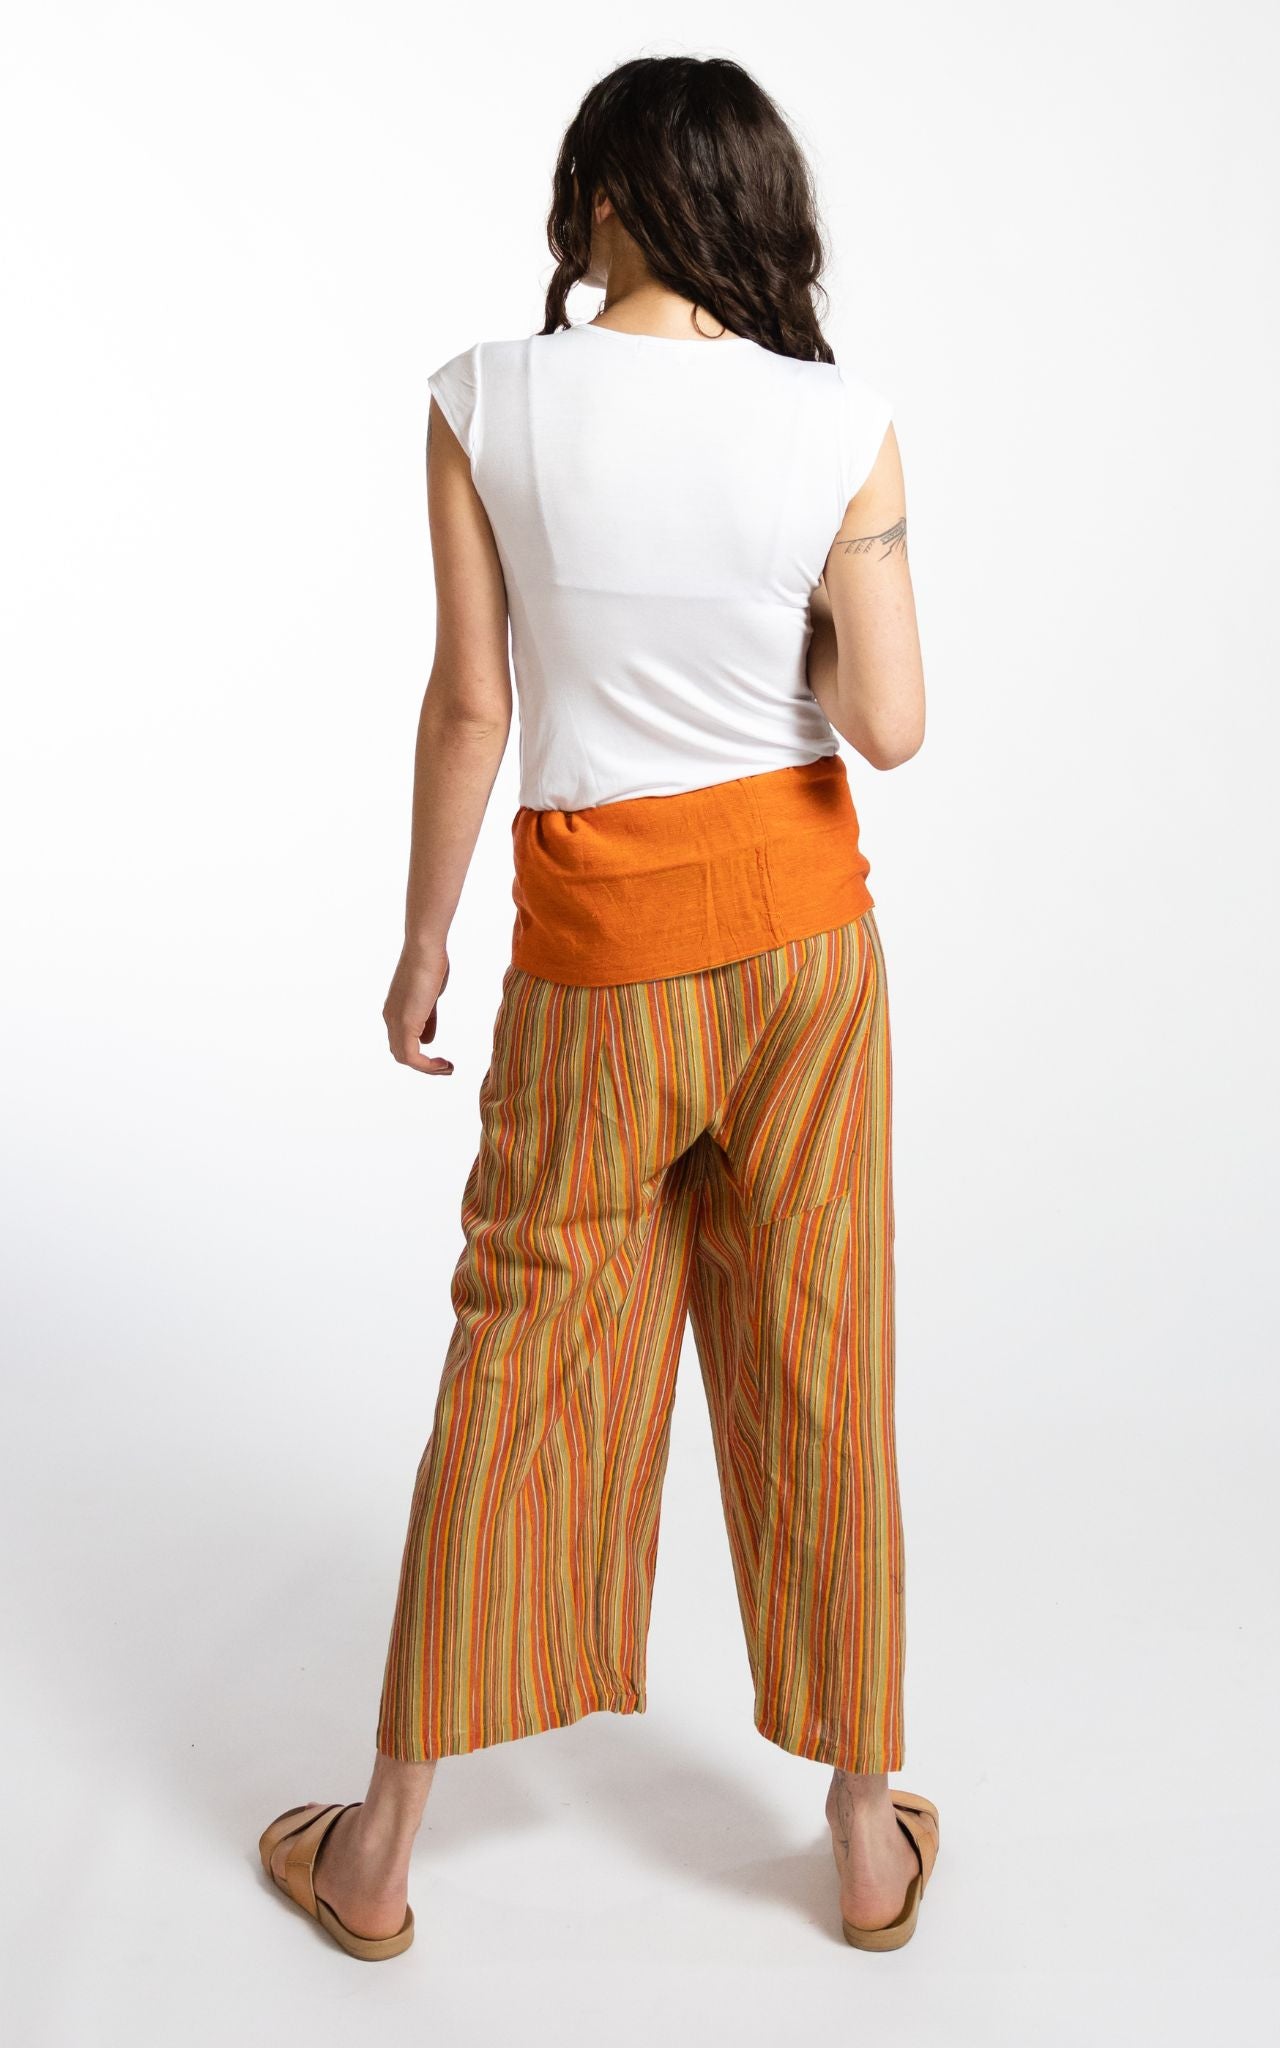 Surya Australia Ethical Cotton Thai Fisherman Pants - Striped Orange